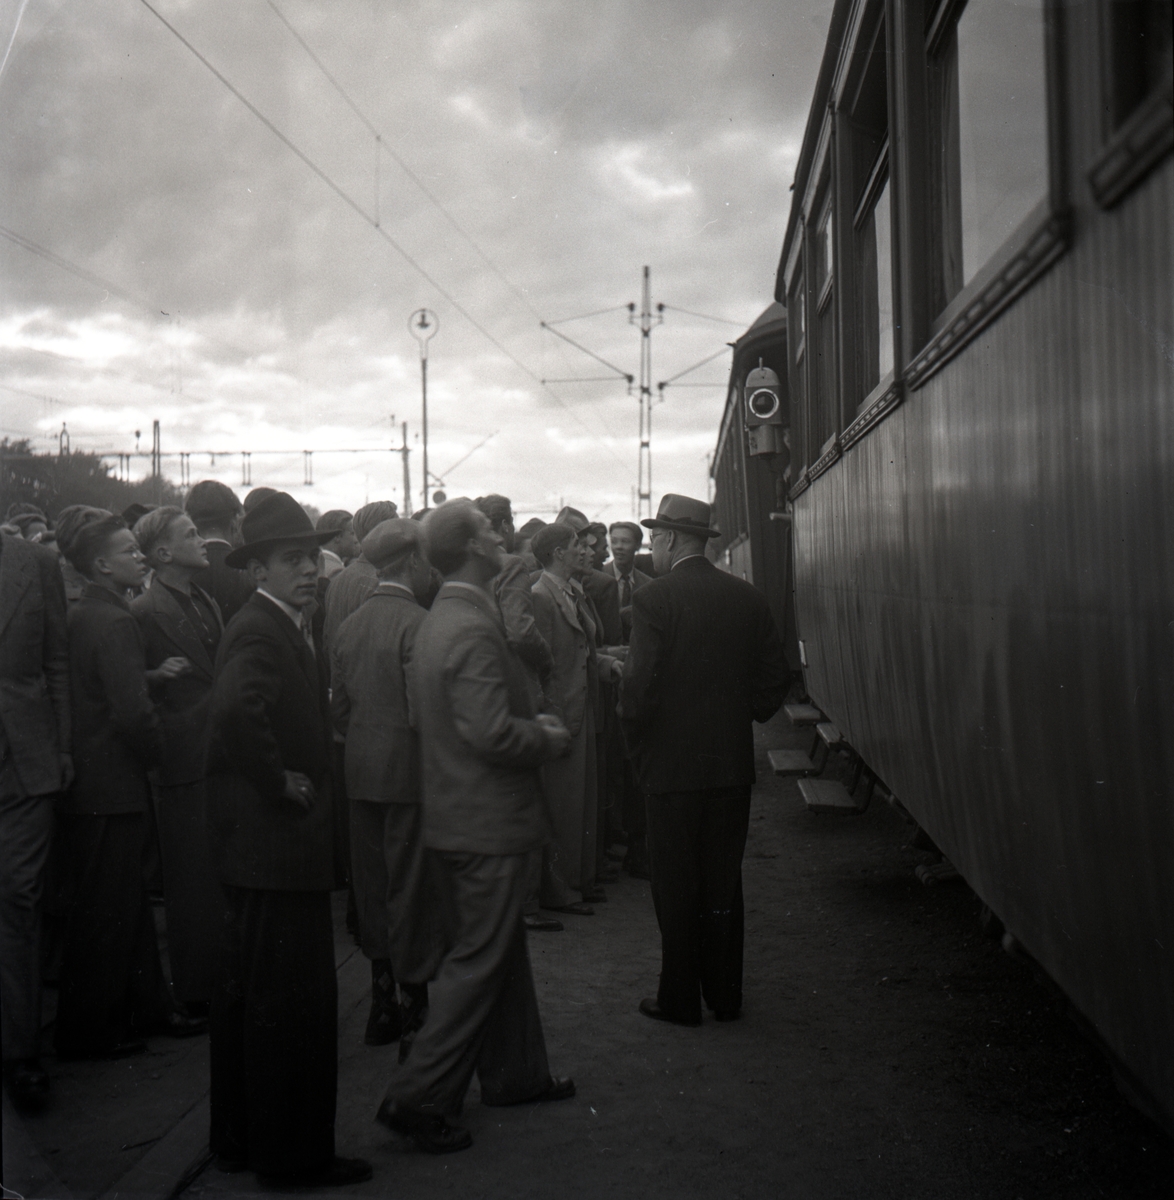 Nazistkravallerna. Folksamling vid järnvägsstationen. Nazismotståndarna samlades vid MÖJ:s smalspåriga järnväg varifrån nazisterna skulle avresa mot Klockrike. Den 4-5 september 1943.